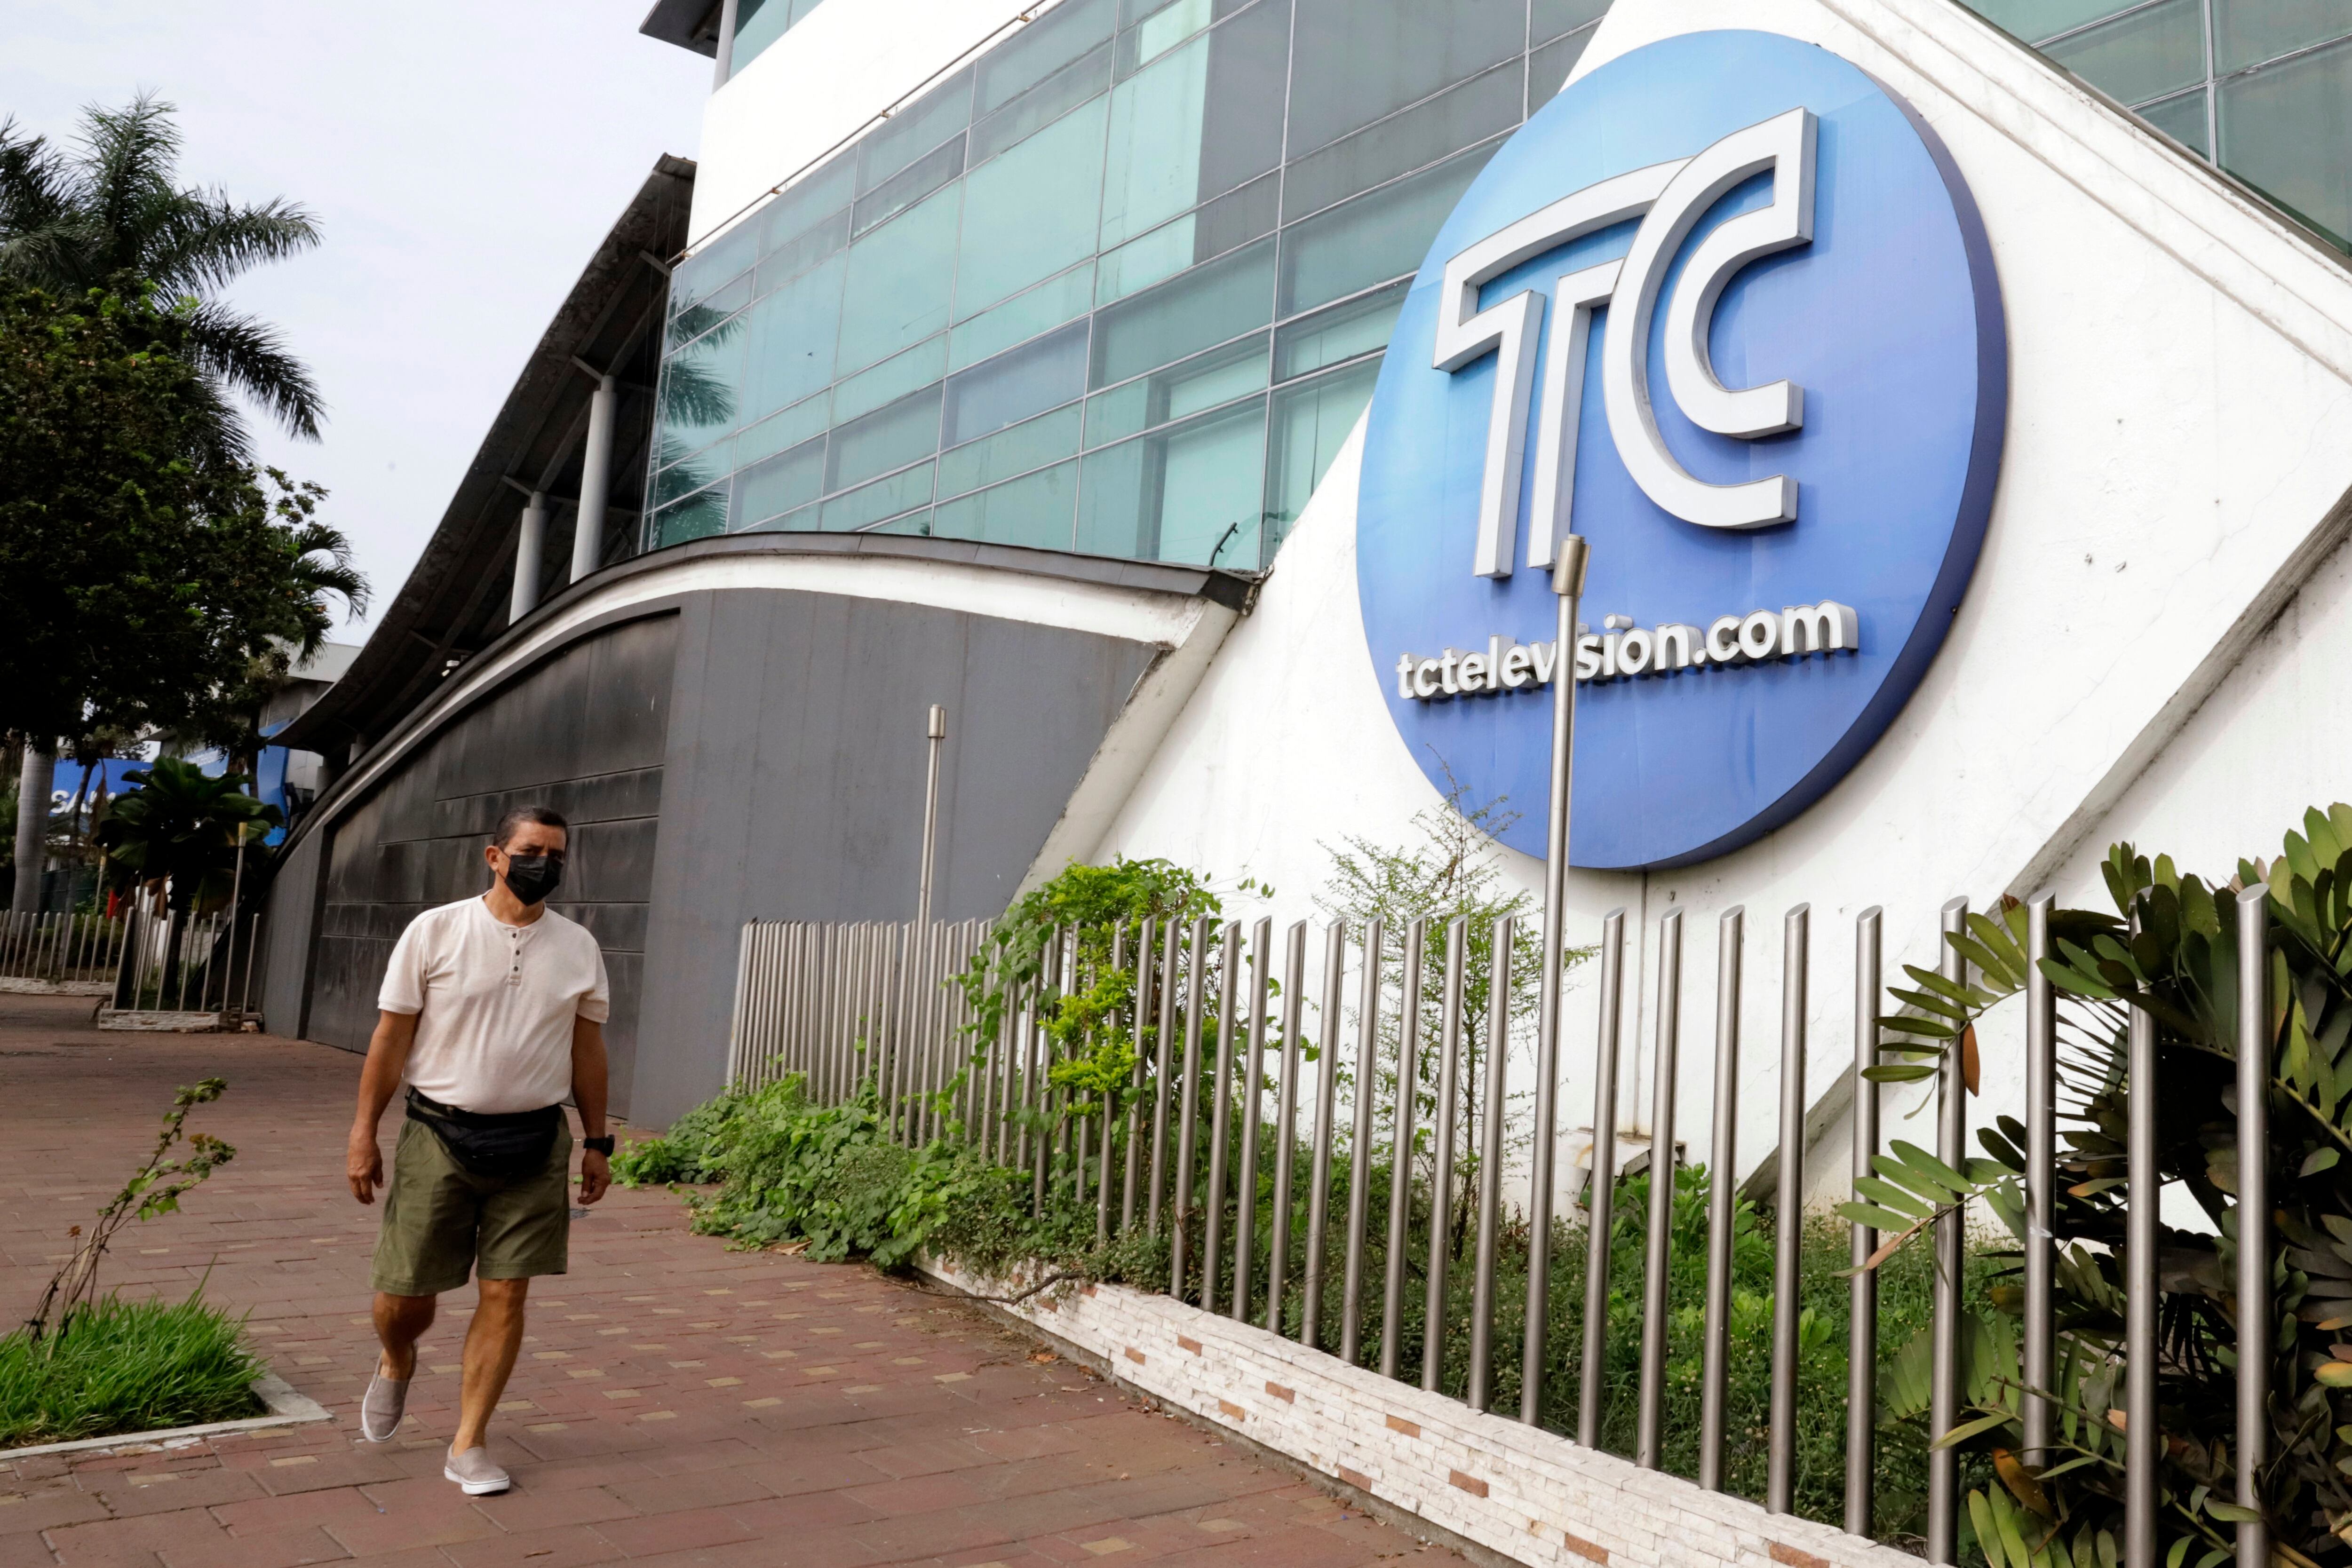 La Fiscalía acusó de terrorismo a los sospechosos tras su presunta participación en la ocupación de las instalaciones del canal TC Televisión, de Guayaquil (EFE/ARCHIVO)
